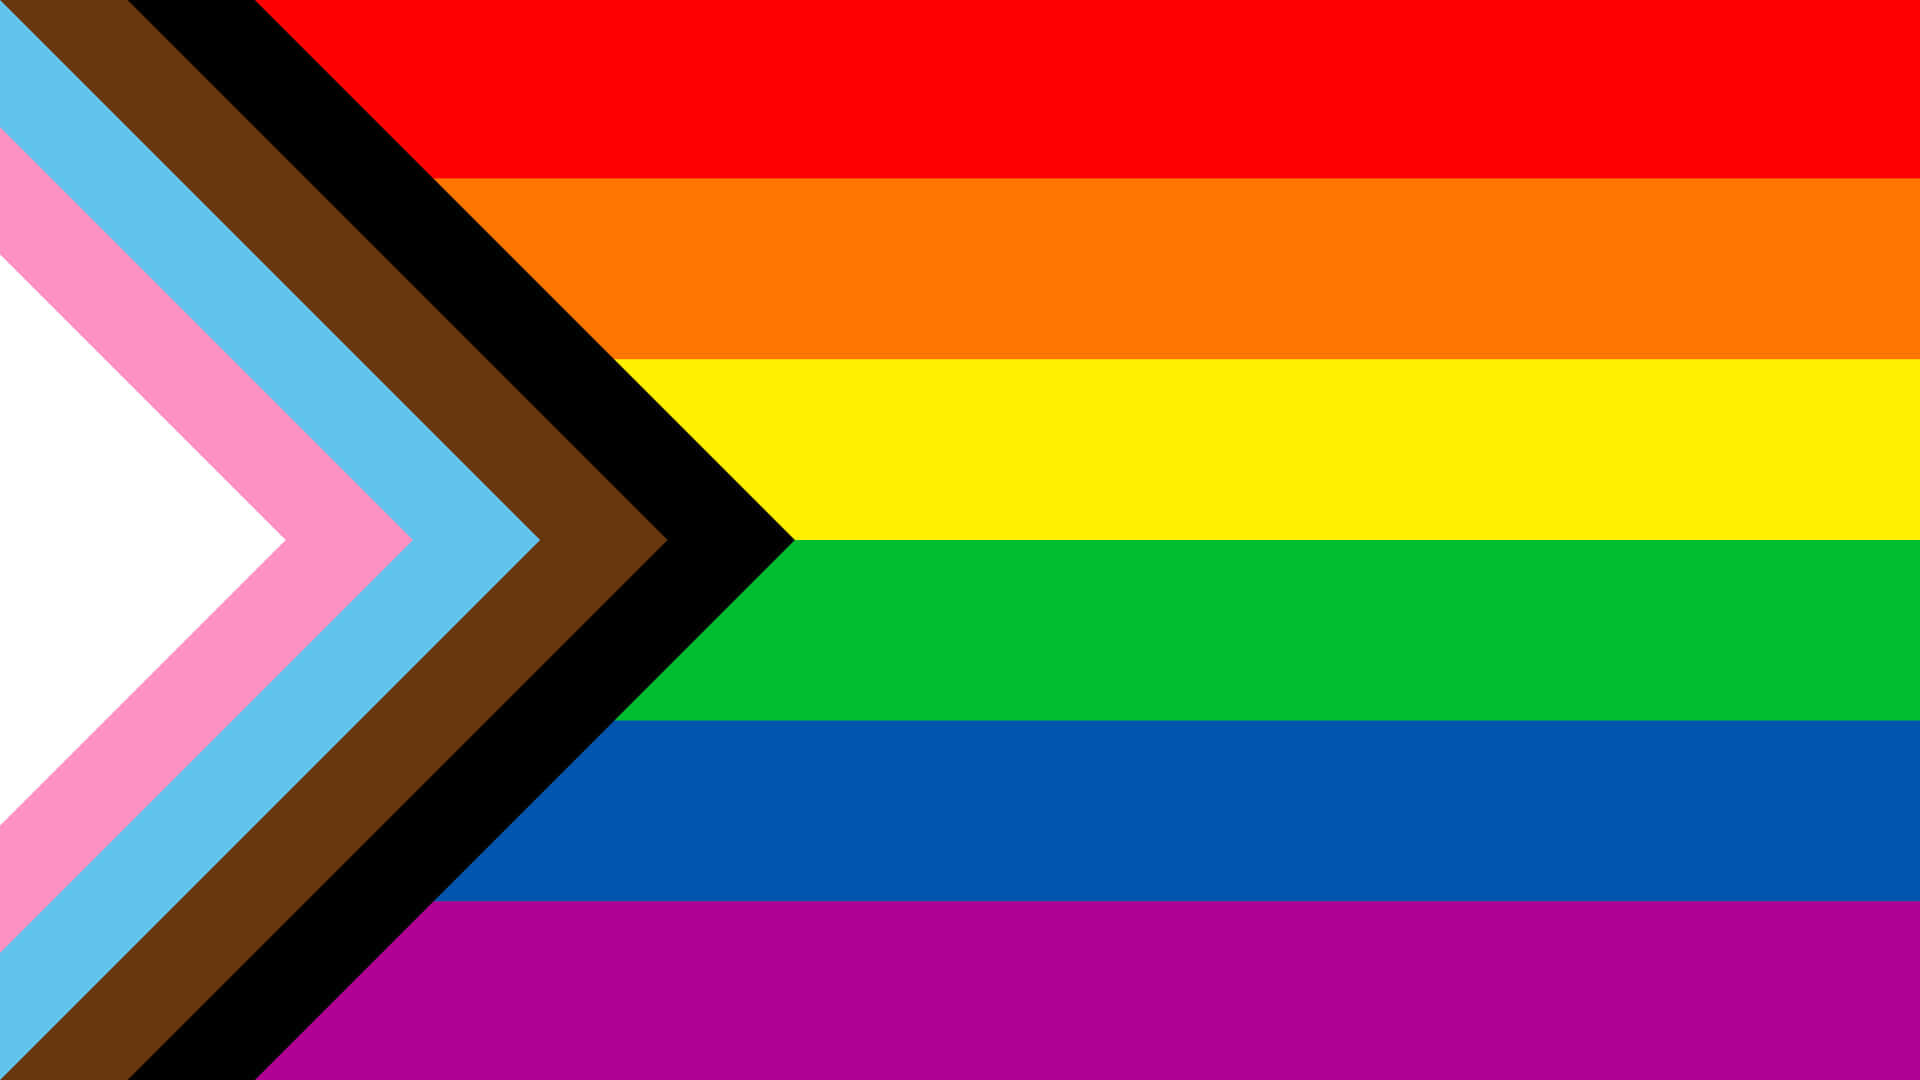 Fondode Escritorio Con La Bandera De Colores Del Arcoíris En Señal De Orgullo. Fondo de pantalla